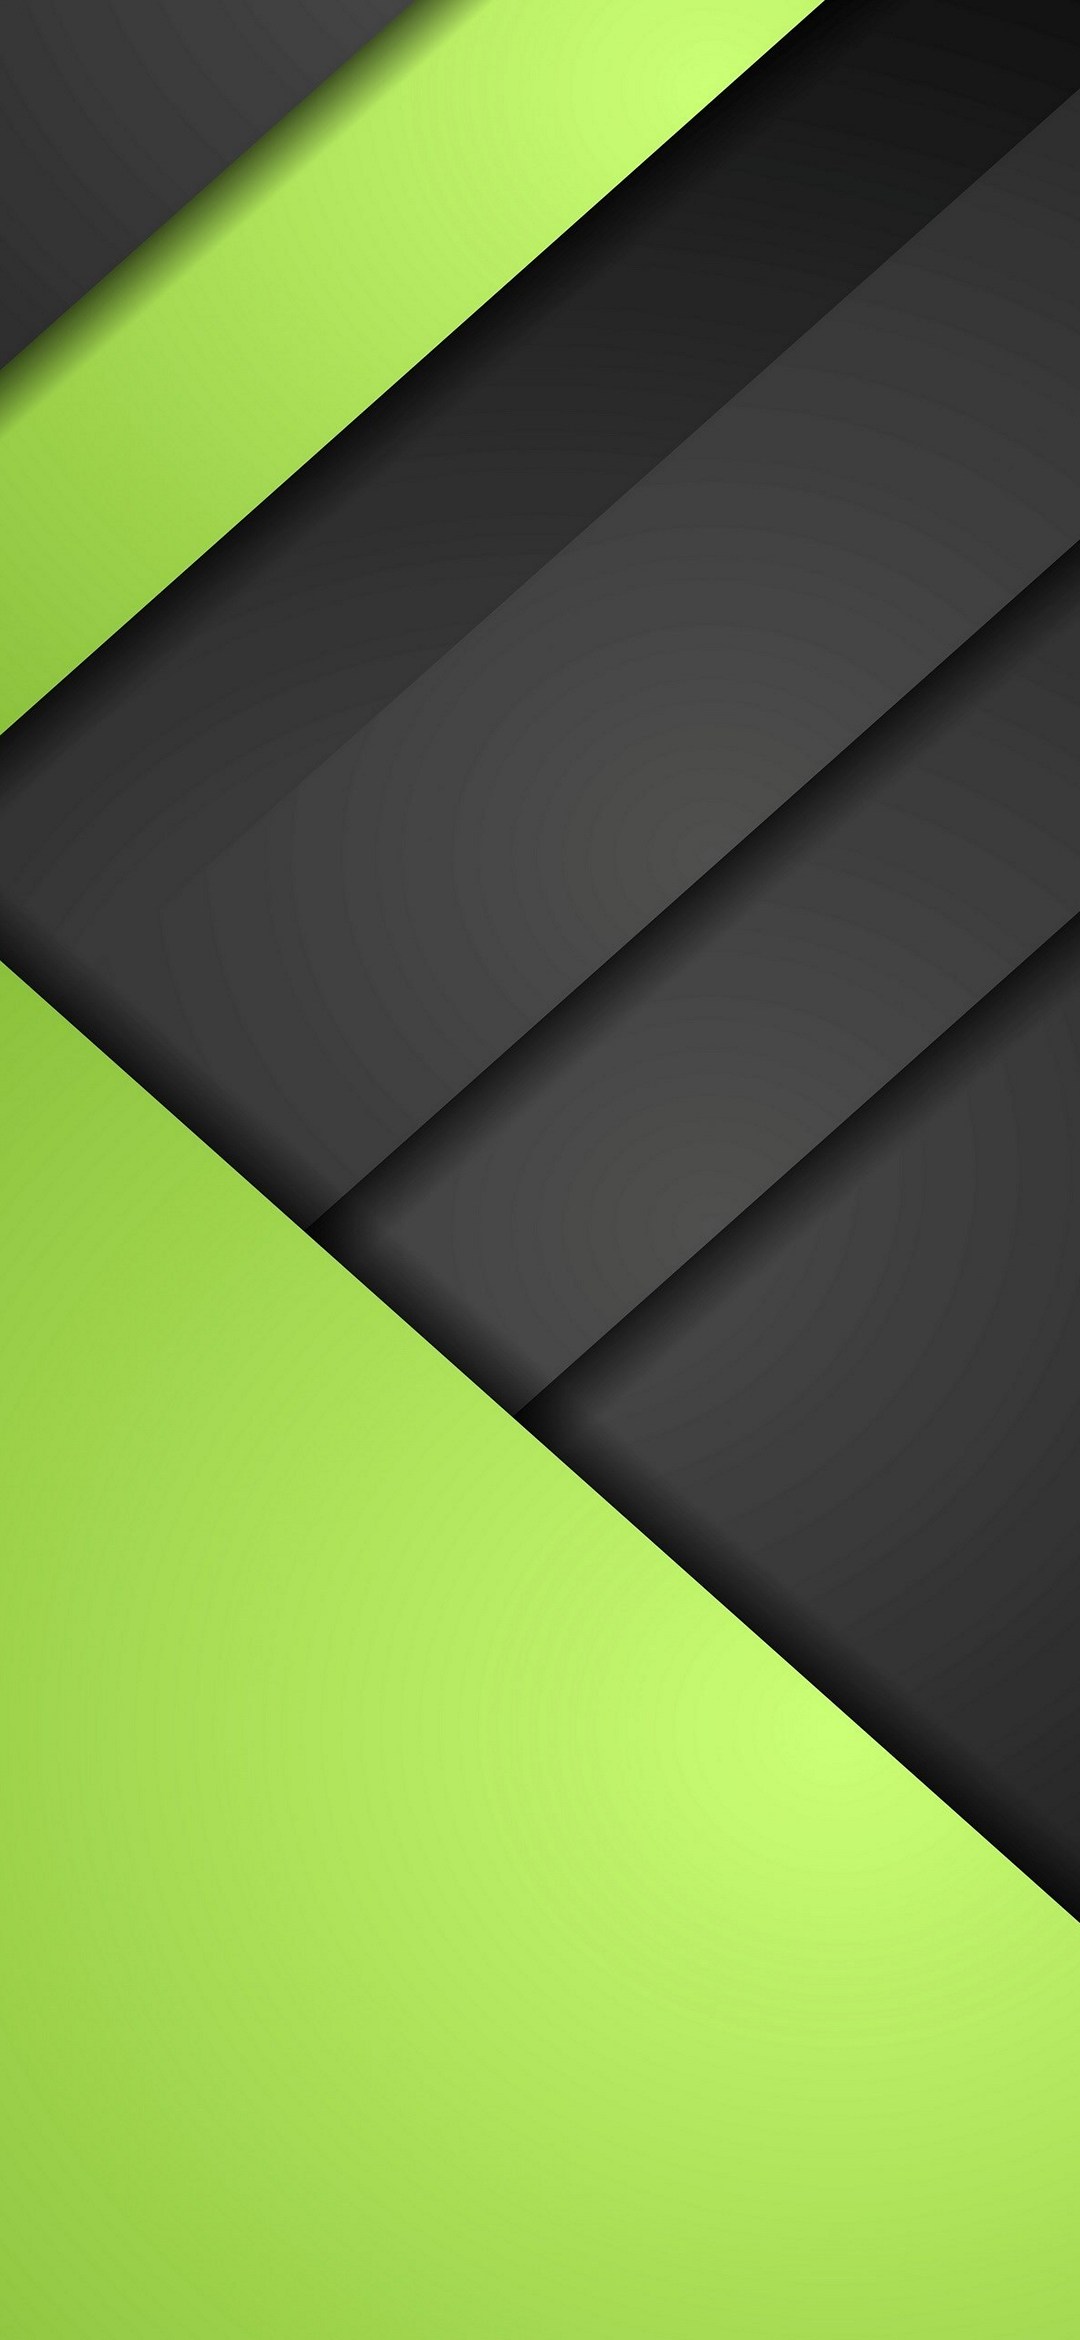 マットな質感 黒の段差 緑 Galaxy A30 Android スマホ壁紙 待ち受け スマラン